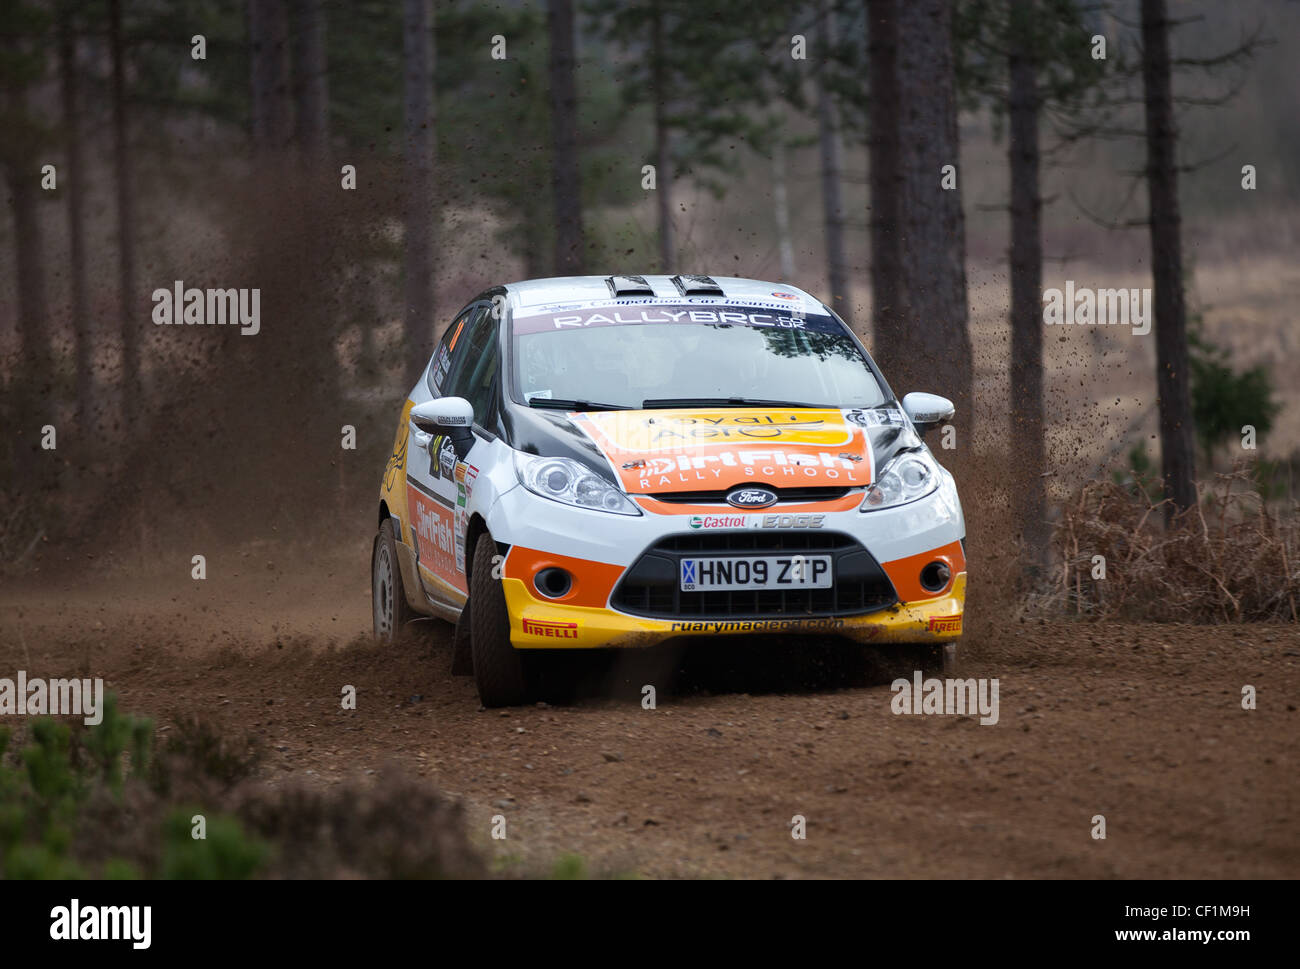 Automobili di eseguire nel Rally Sunseeker 2012, primo round del British Rally Championship, BRC. Foto Stock